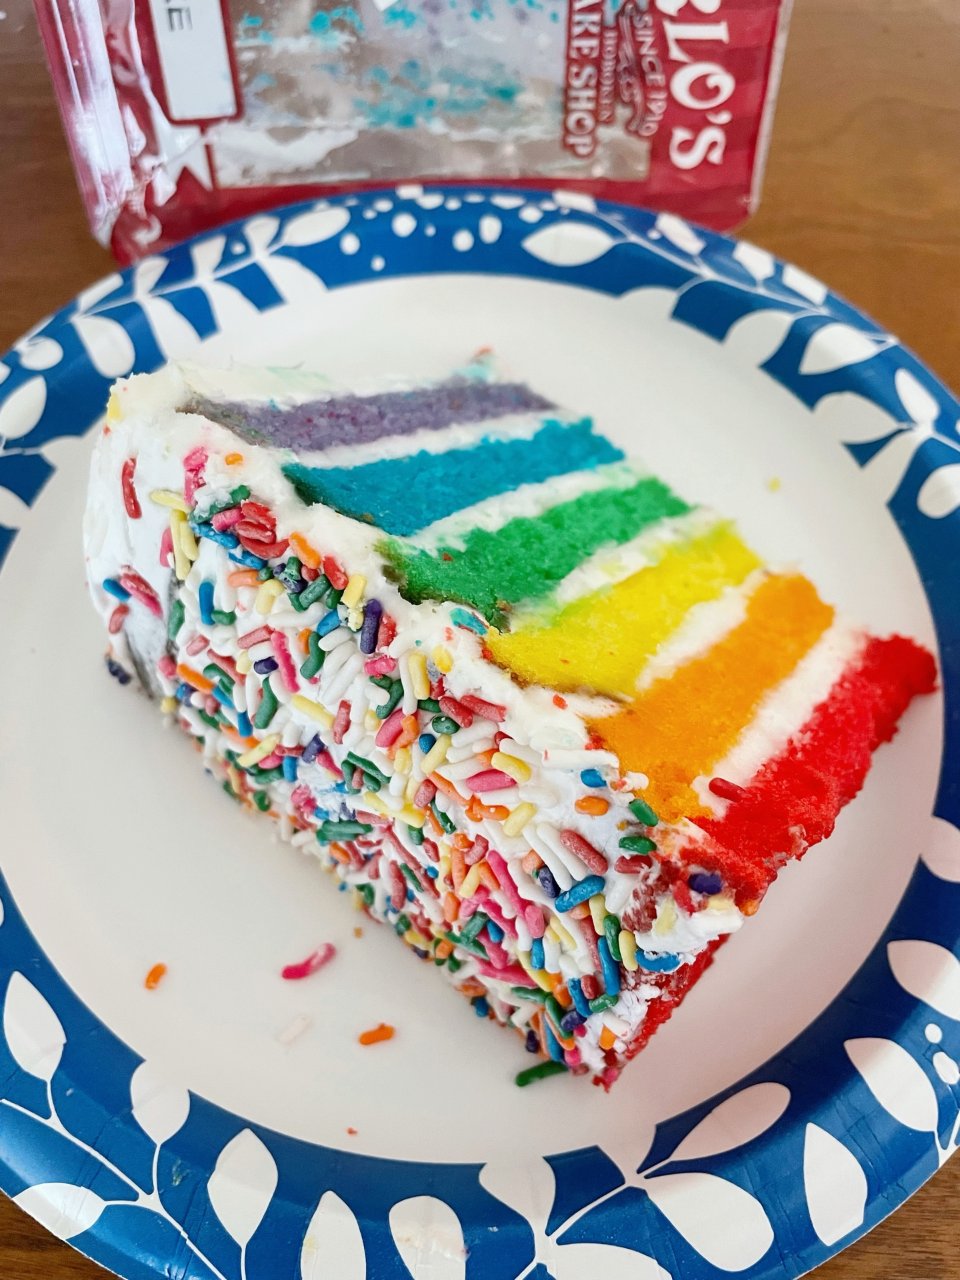 龙年·彩虹蛋糕🍰...